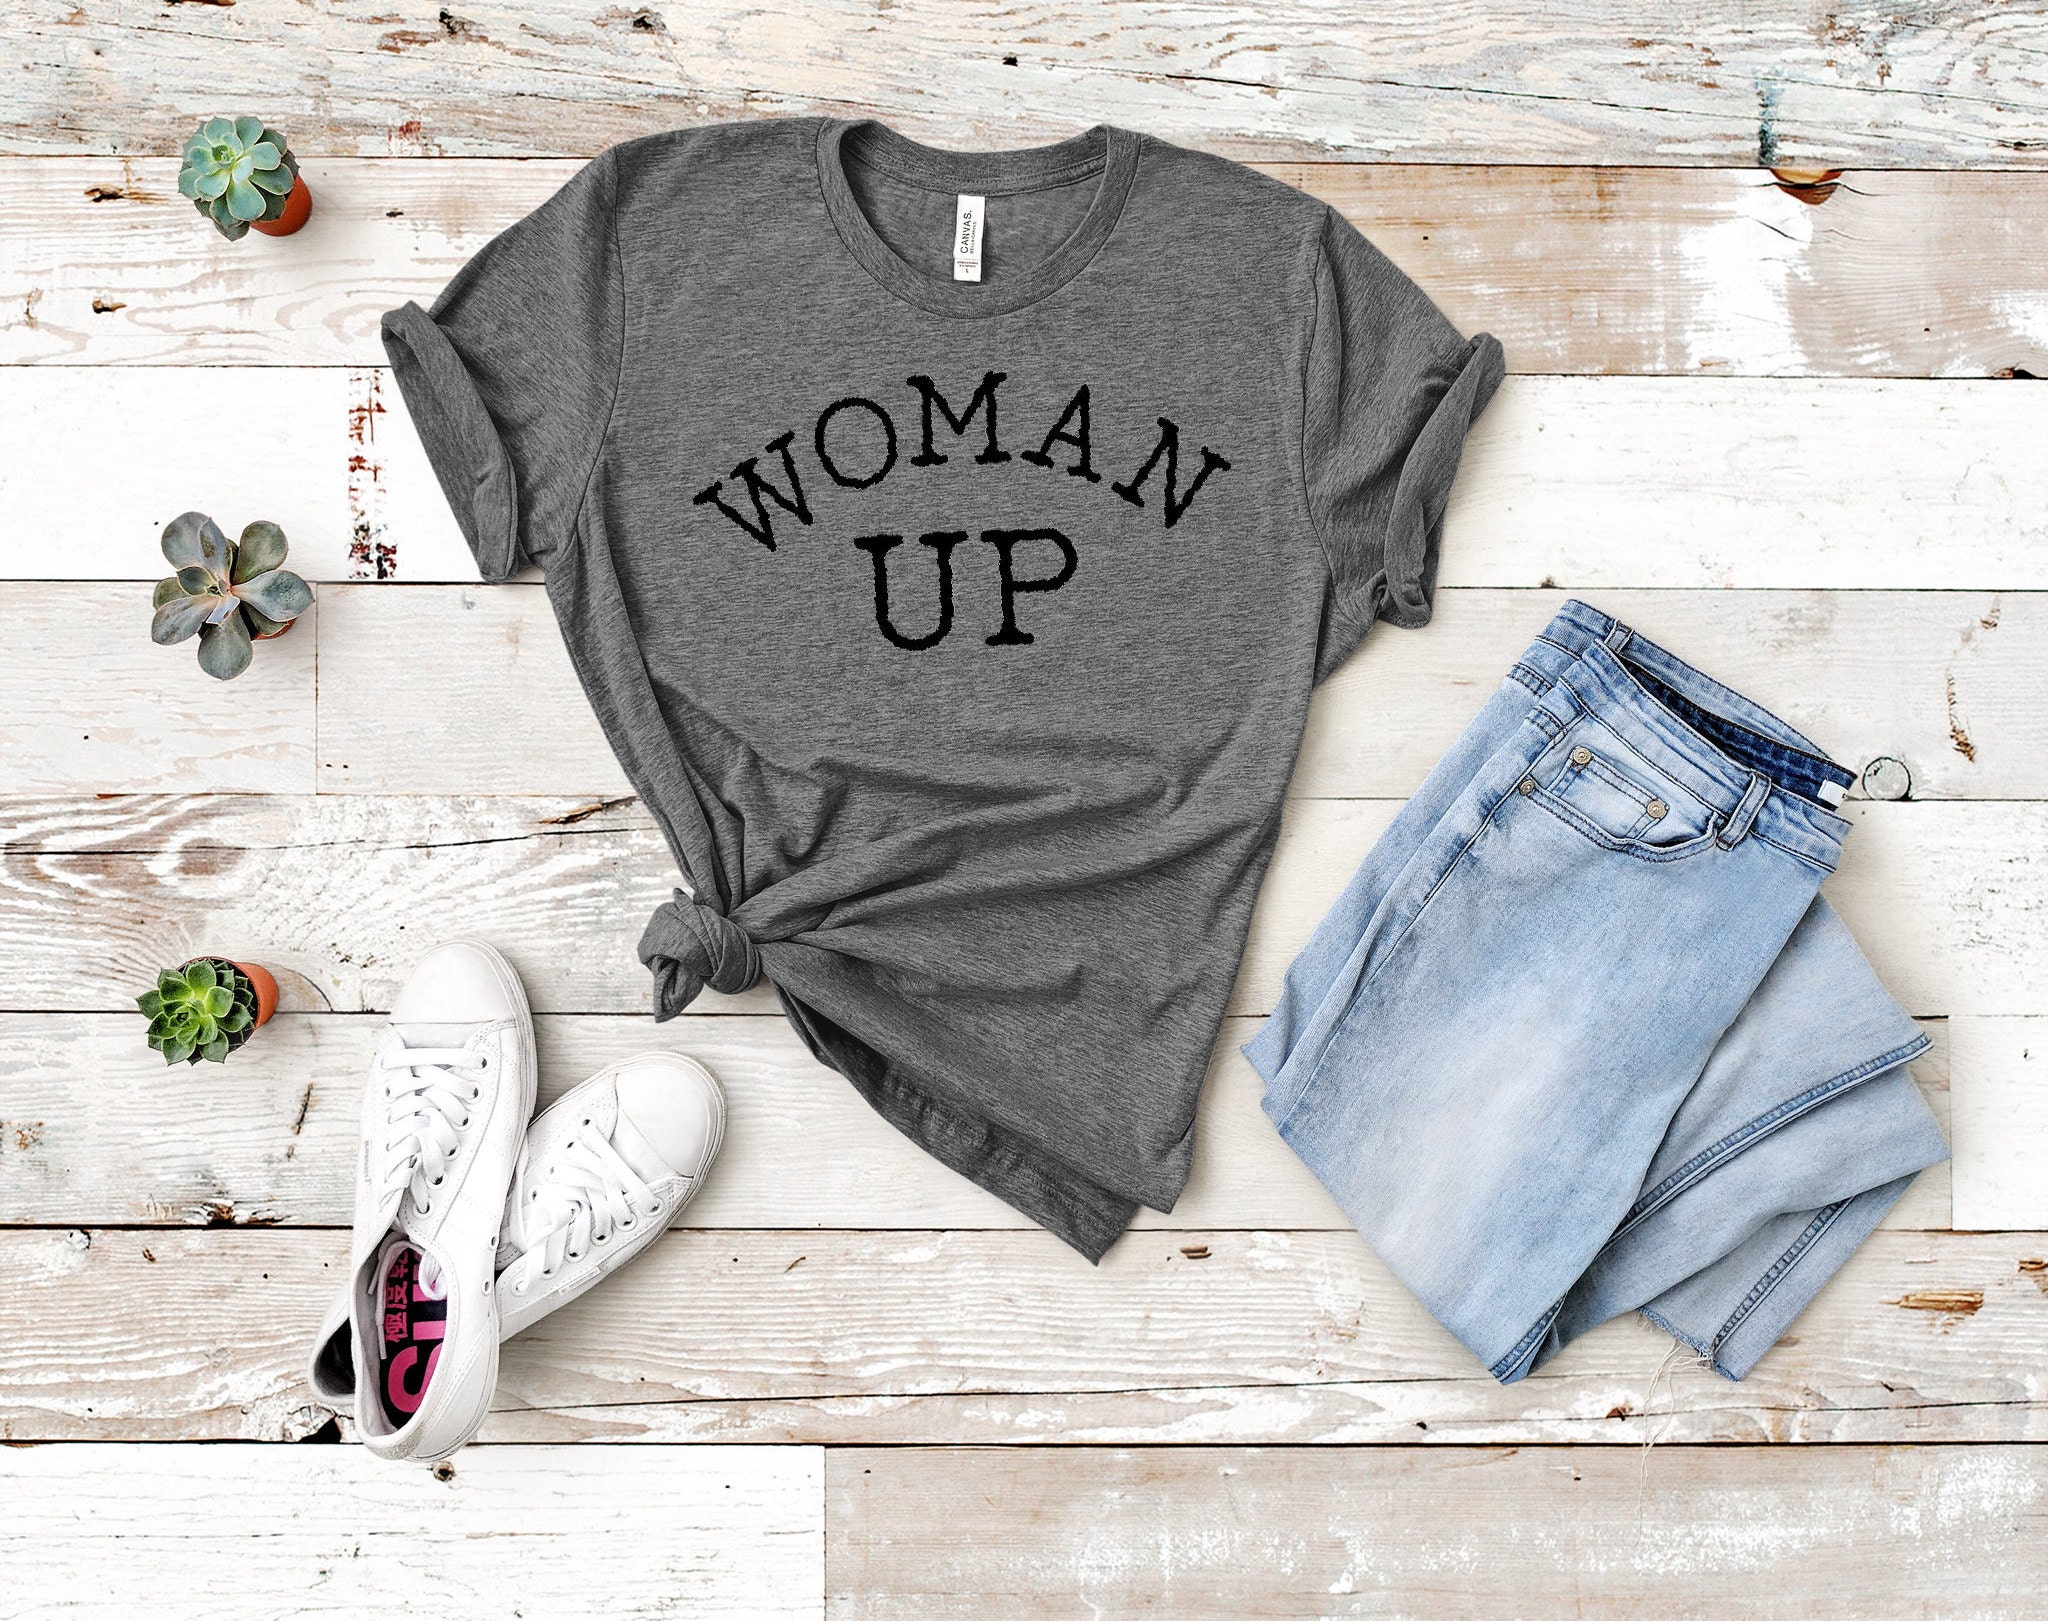 Discover Woman Up Shirt, Motivational Shirt, Women Empowerment, Women Up T-shirt, Inspirational Shirt, Woman Up, Equality Shirt, Feminist Shirt